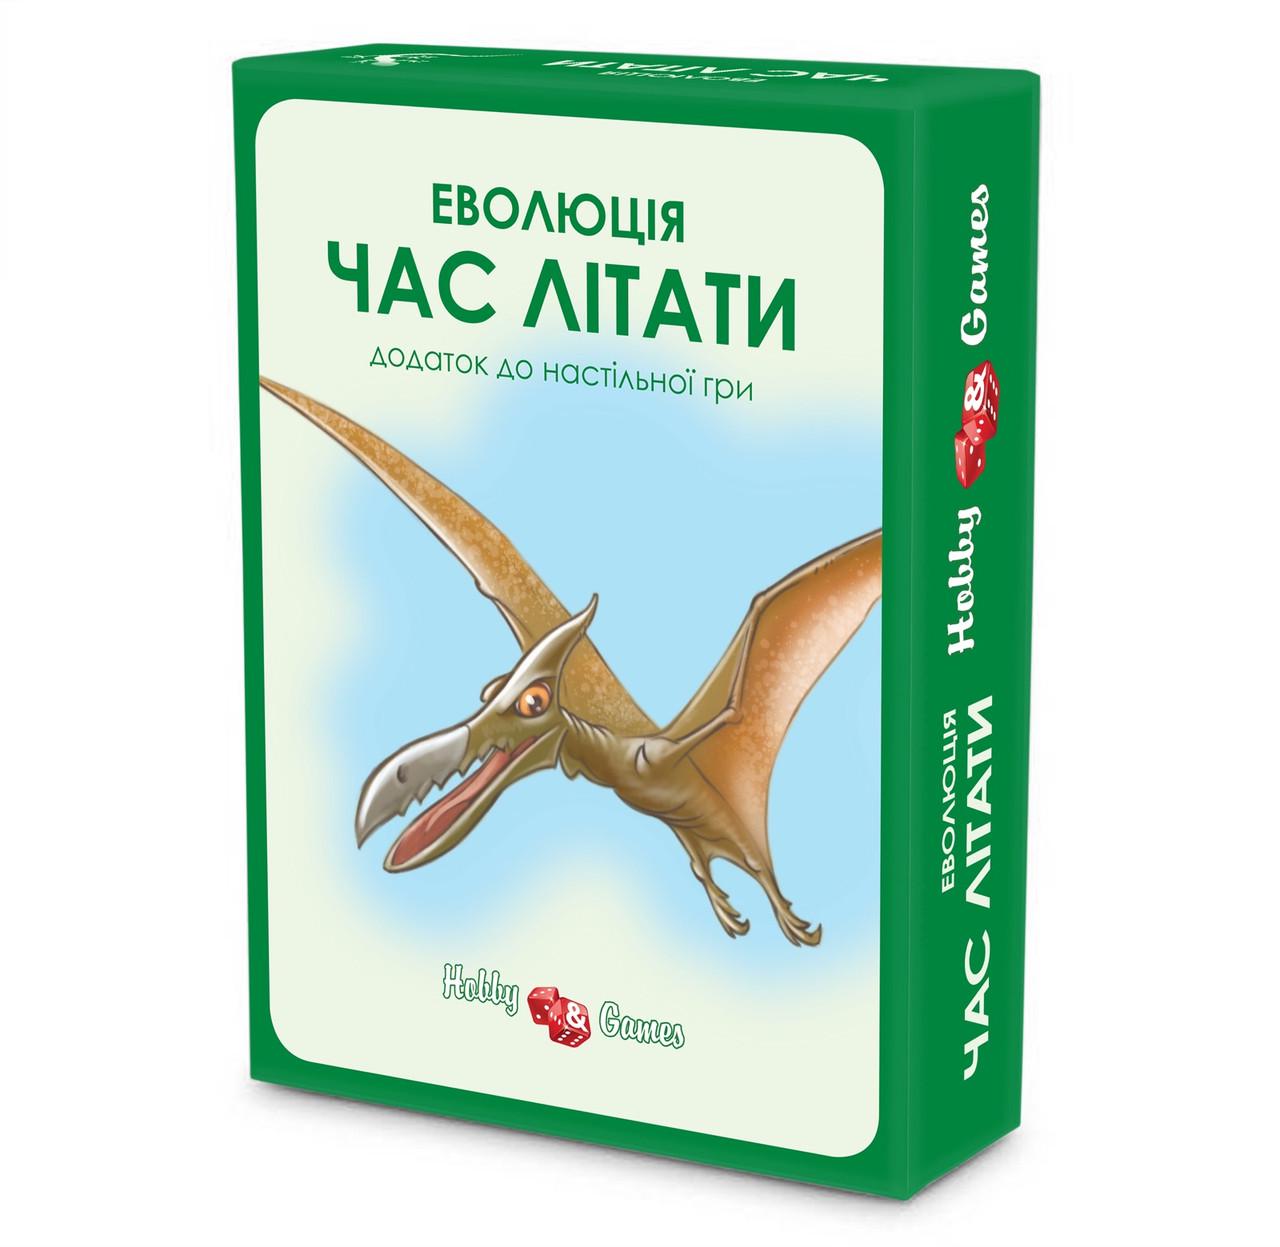 Настольная игра "Еволюція Час літати" дополнение украинское издание (1941994620)